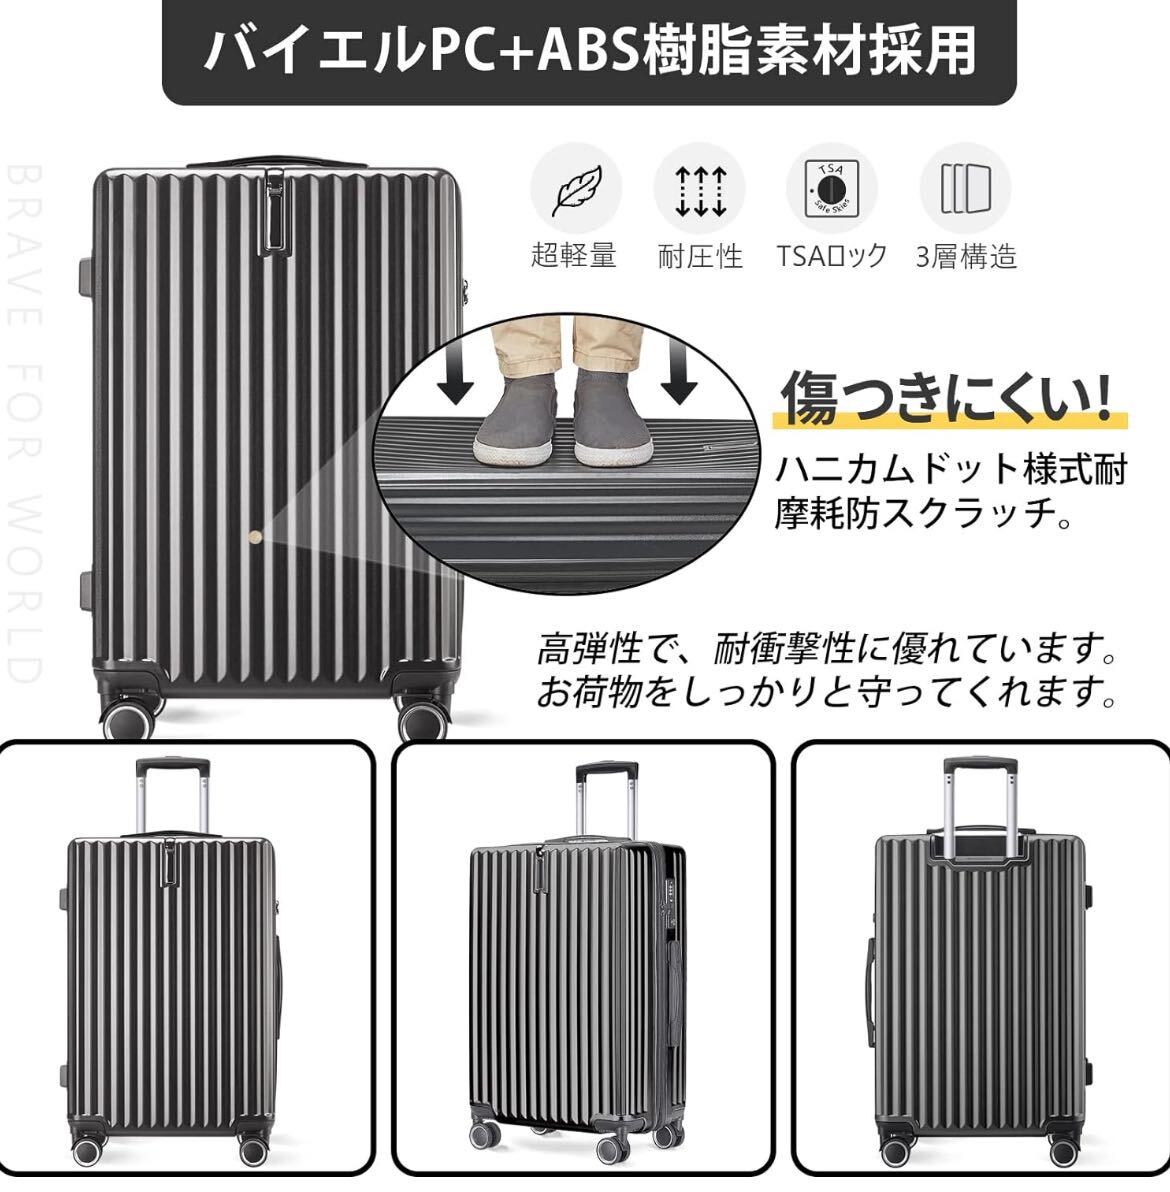  чехол для переноски   M размер     серый   чемодан   TSA рок   большое содержимое    двойной  ... звезда    командировка    путешествие  ...